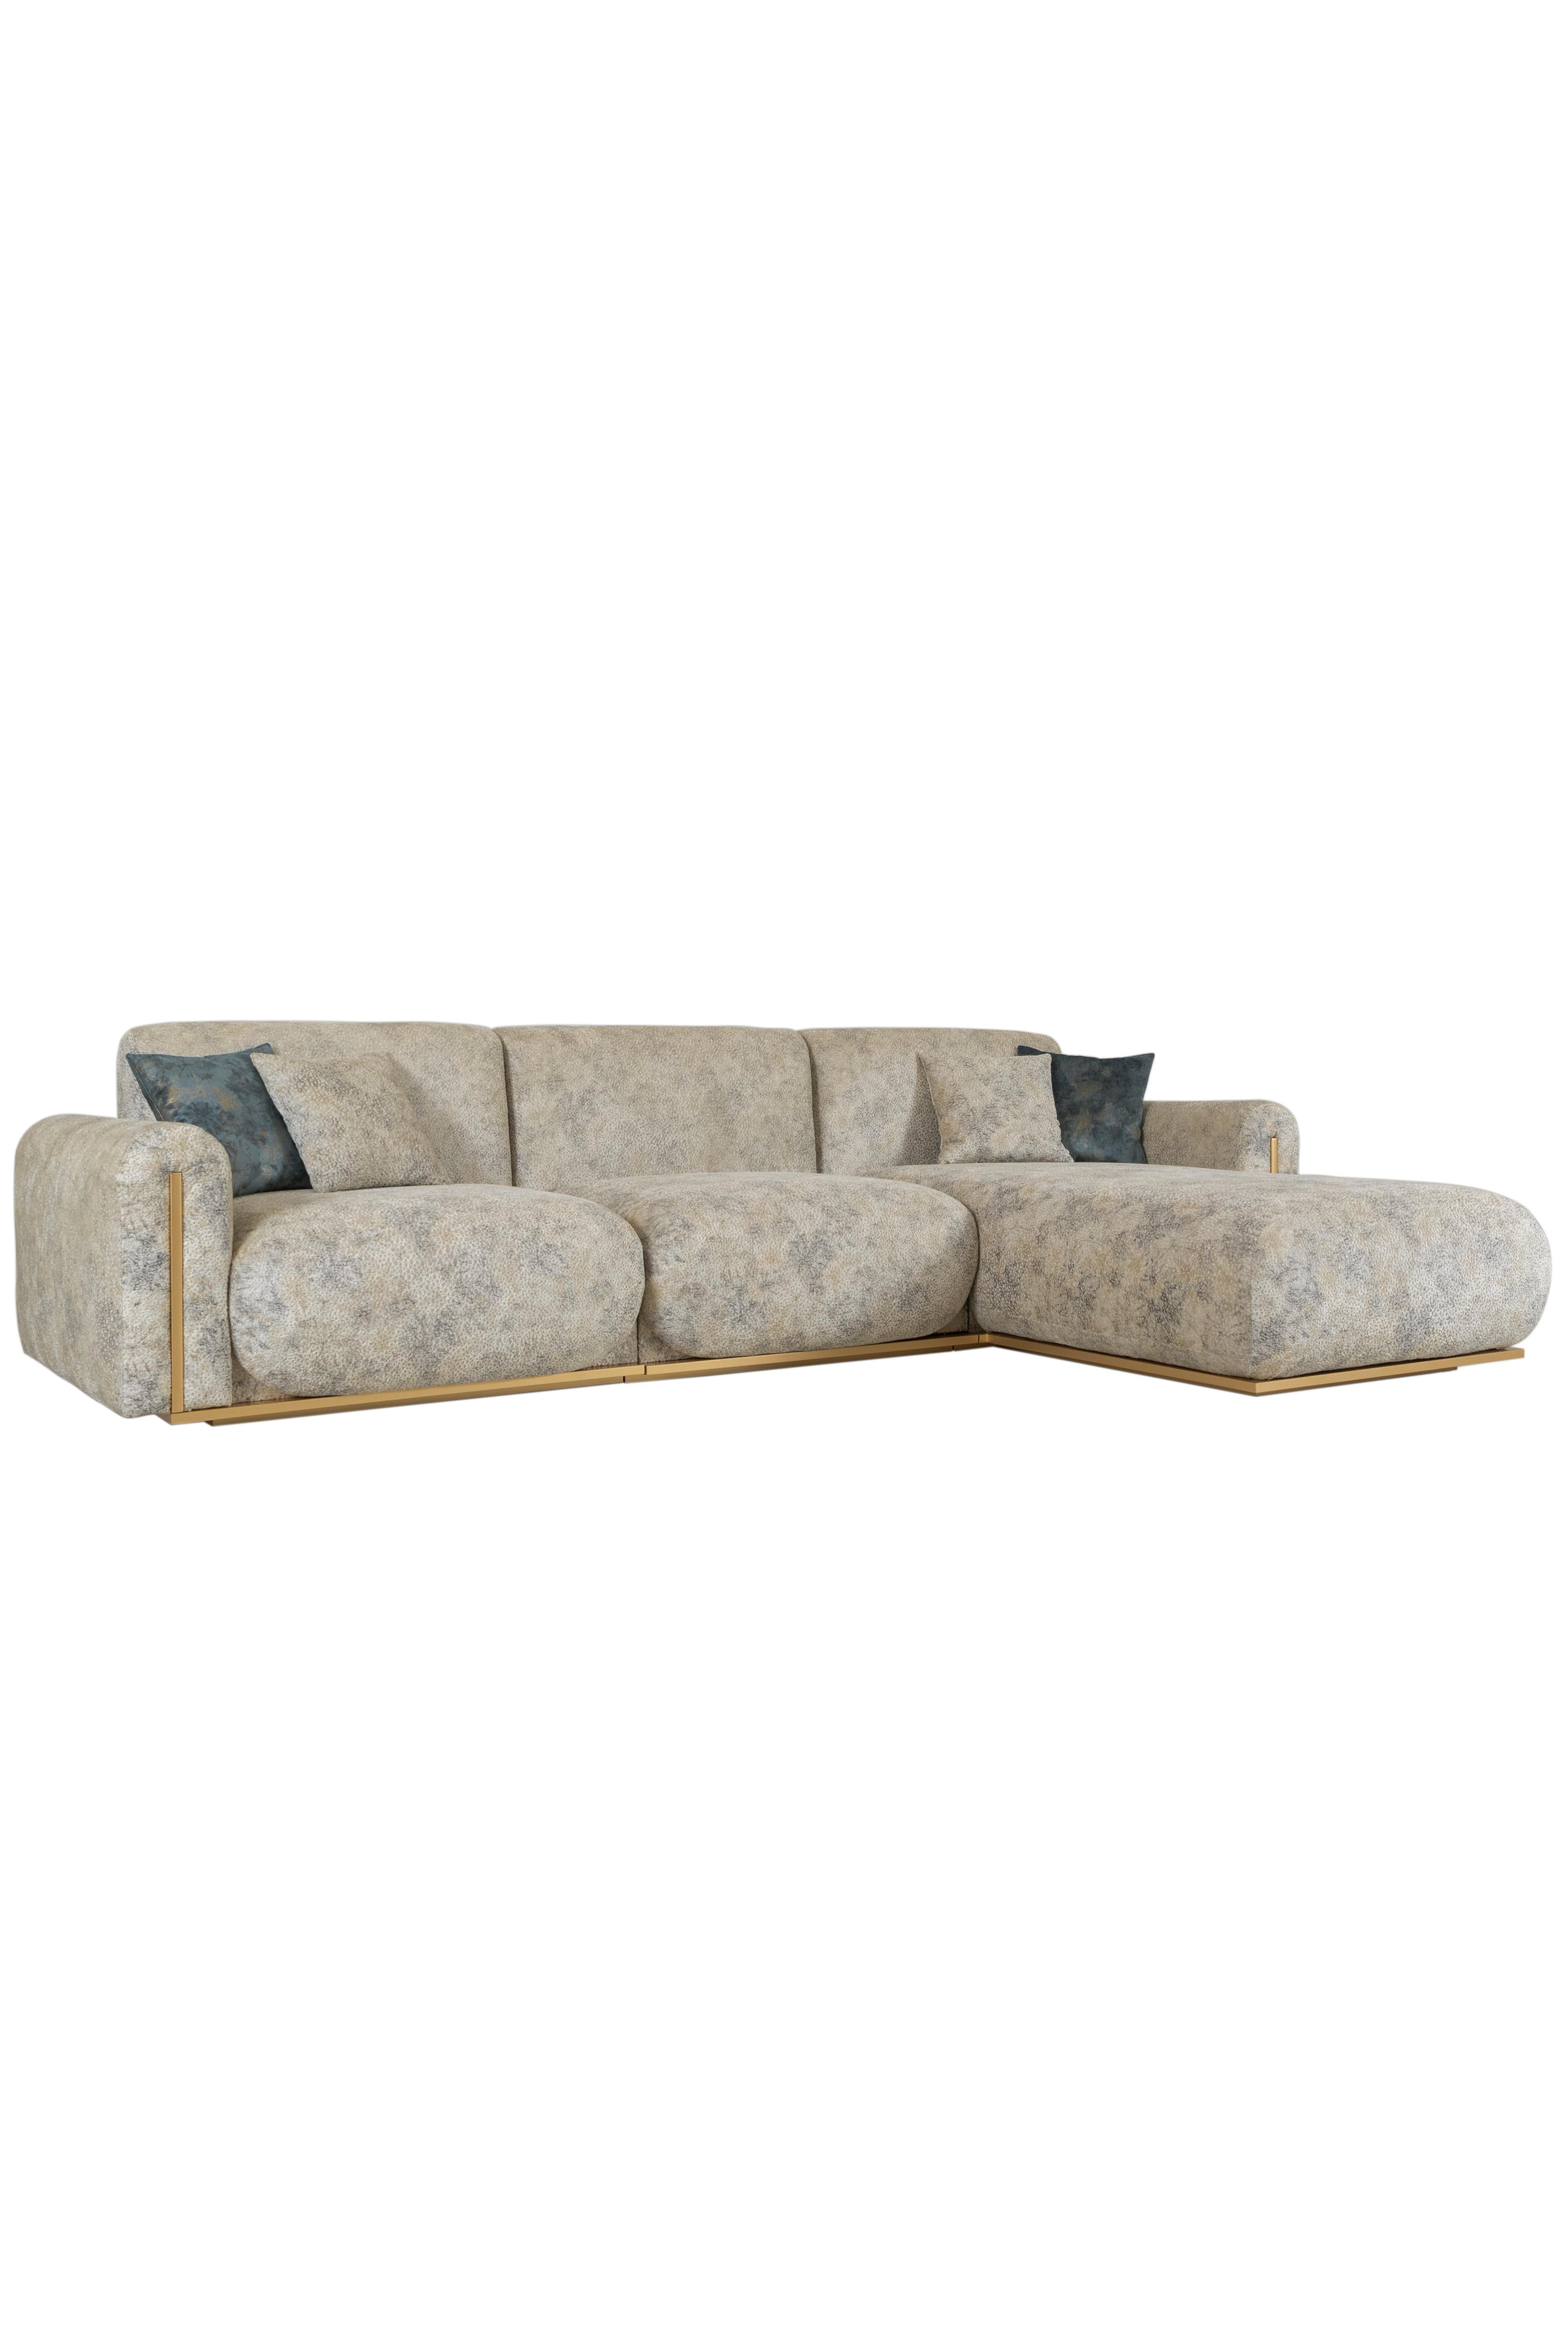 Contemporary Modern Beijinho Sofa, Beige Velvet Leather, Handmade in Portugal by Greenapple For Sale